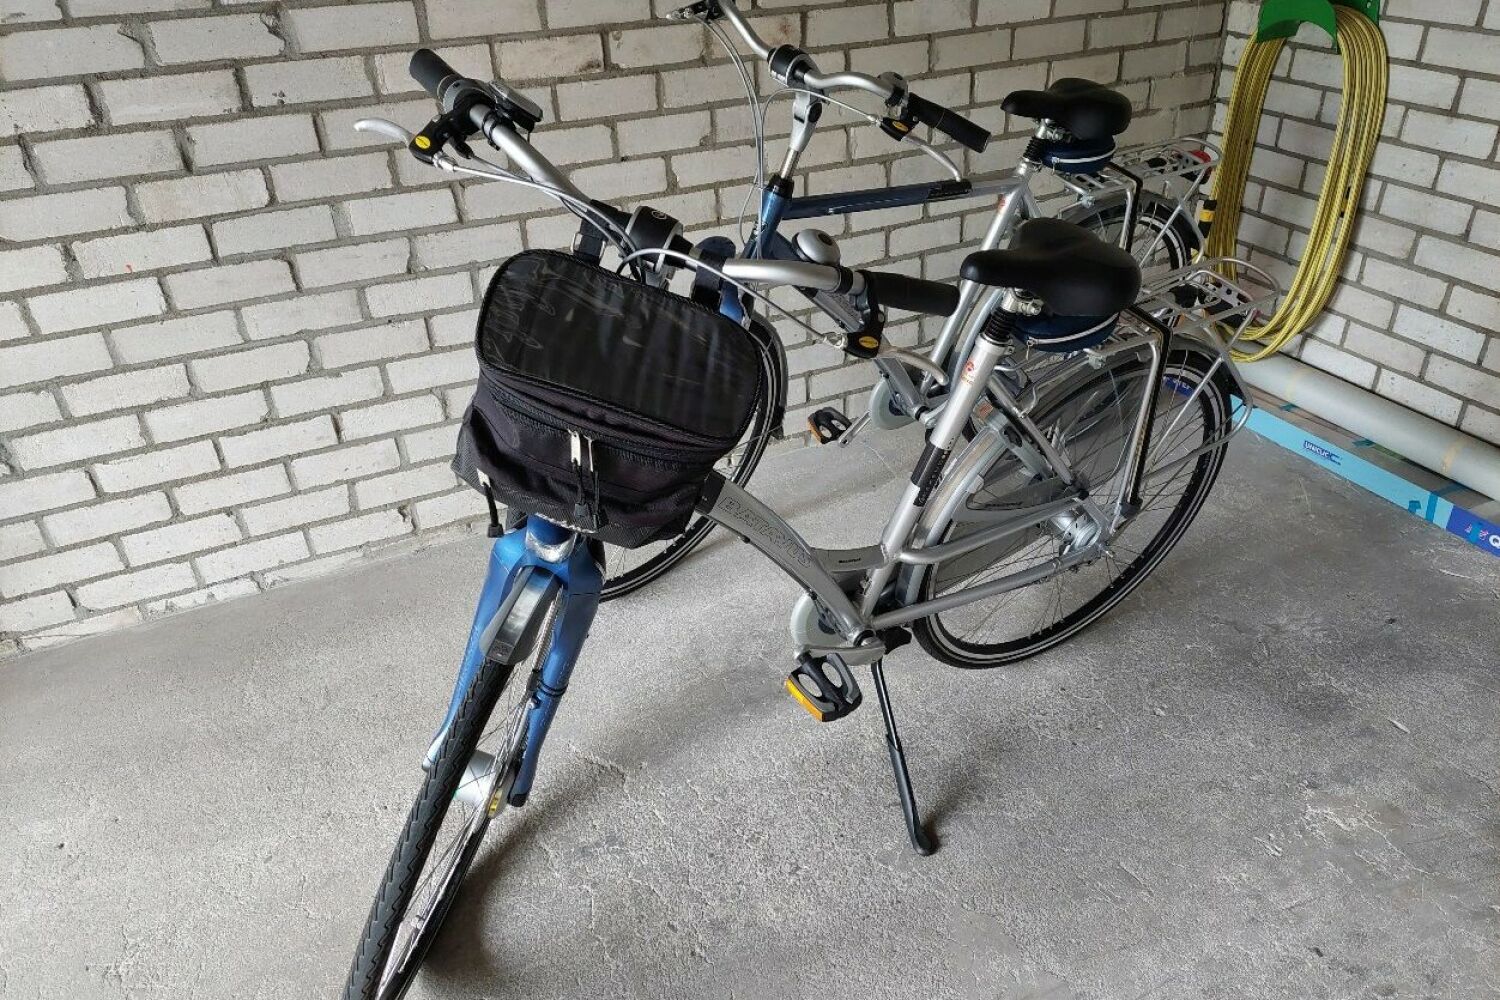 Batavus set fietsen te koop aangeboden.